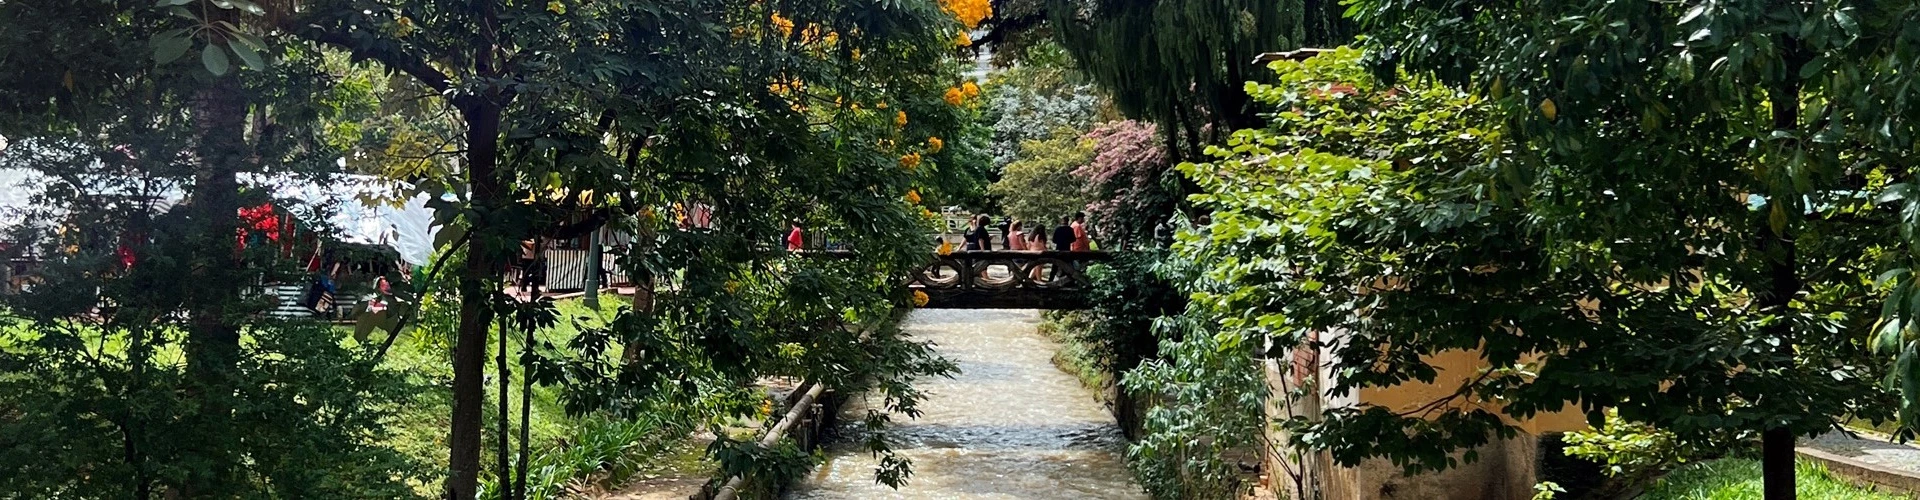 Pessoas atravessam ponte sobre um rio cercado de vegetação em dia claro